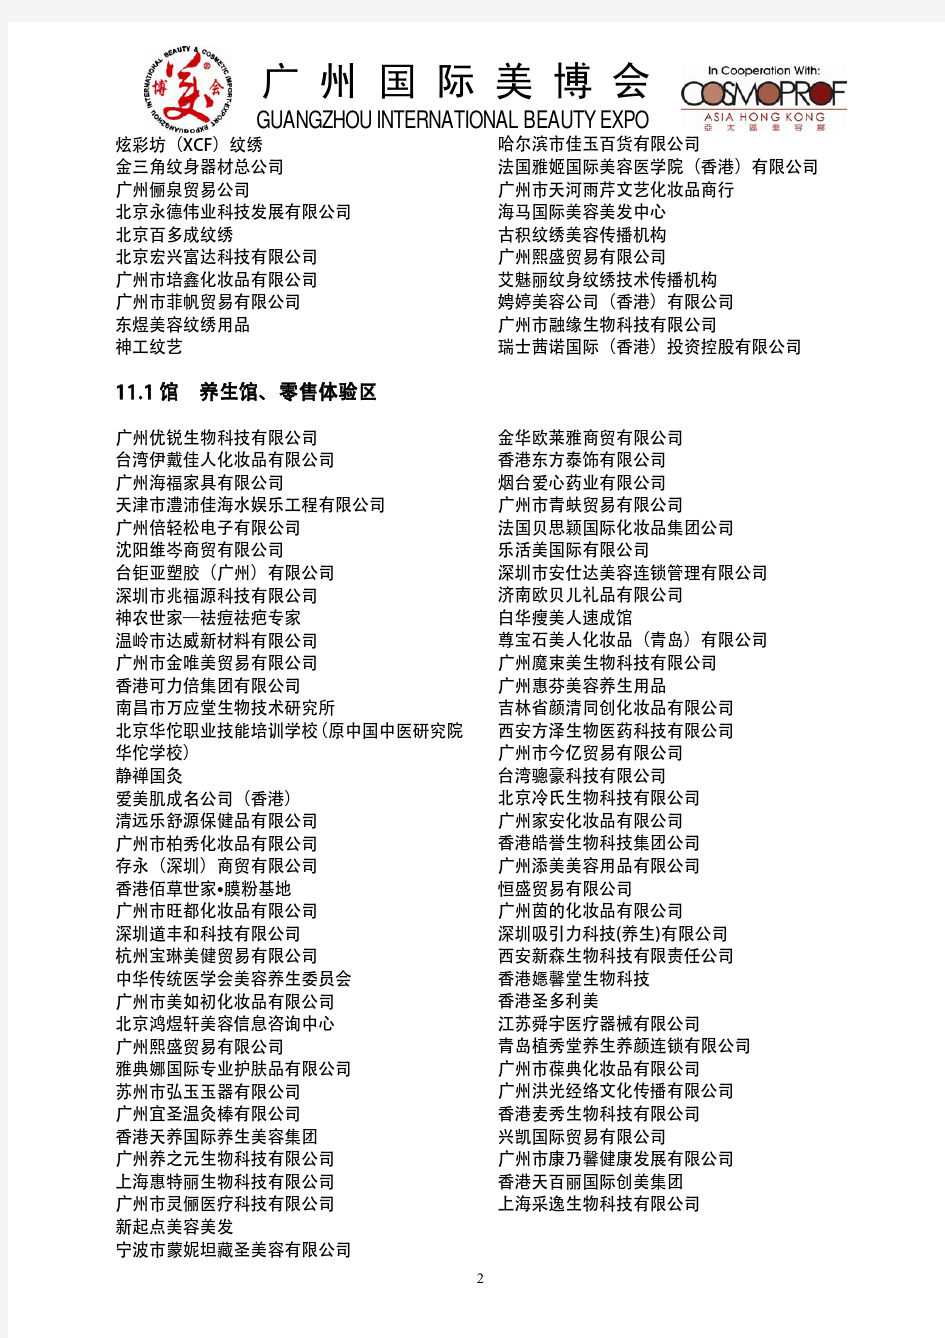 35届广州国际美博会展商名单